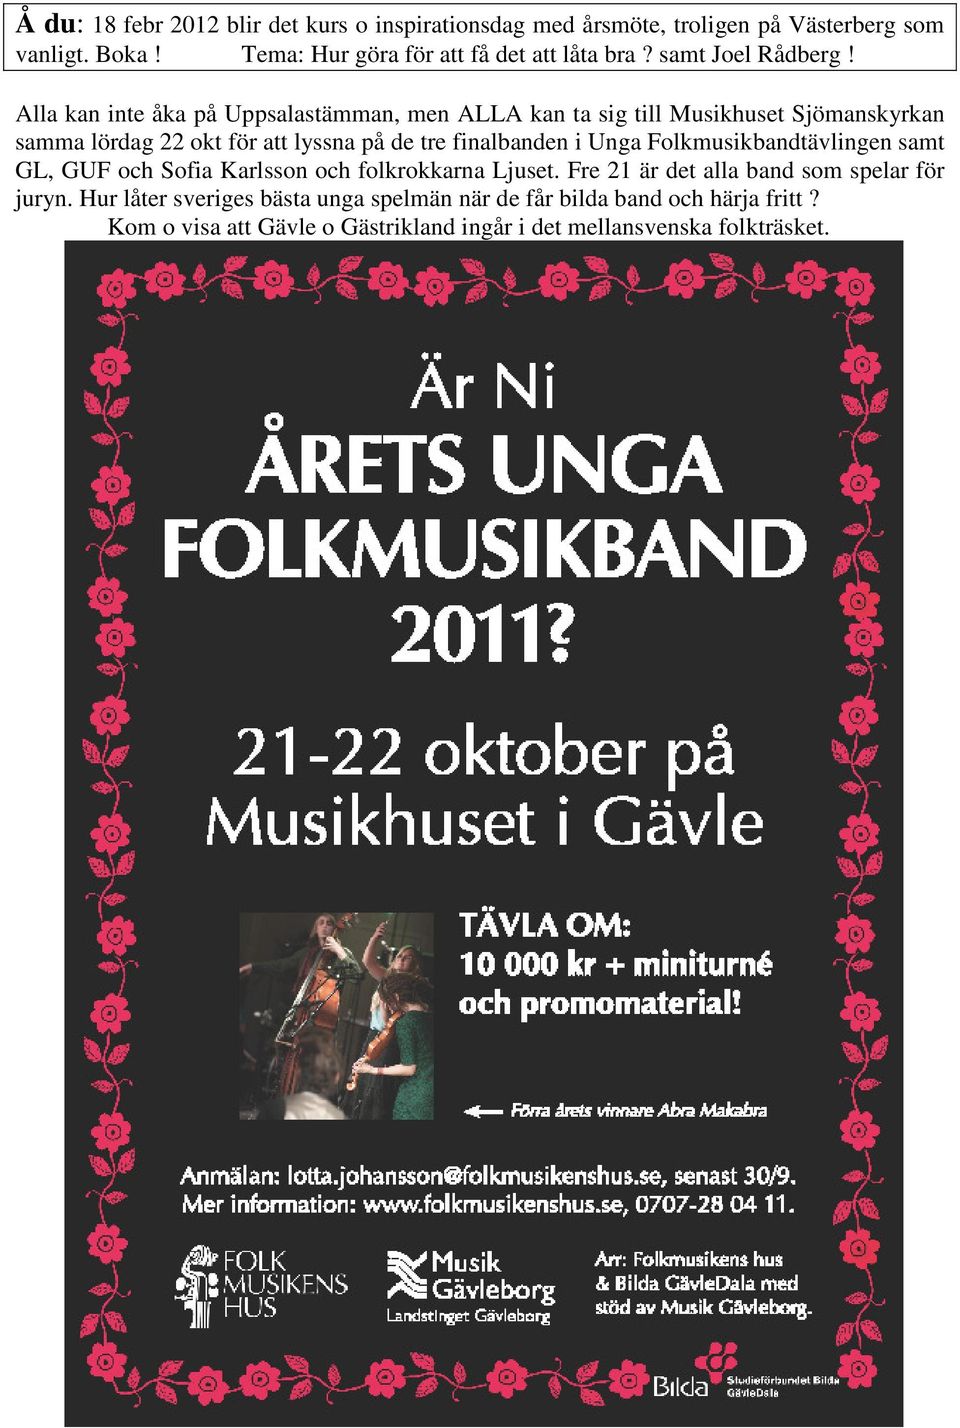 Alla kan inte åka på Uppsalastämman, men ALLA kan ta sig till Musikhuset Sjömanskyrkan samma lördag 22 okt för att lyssna på de tre finalbanden i